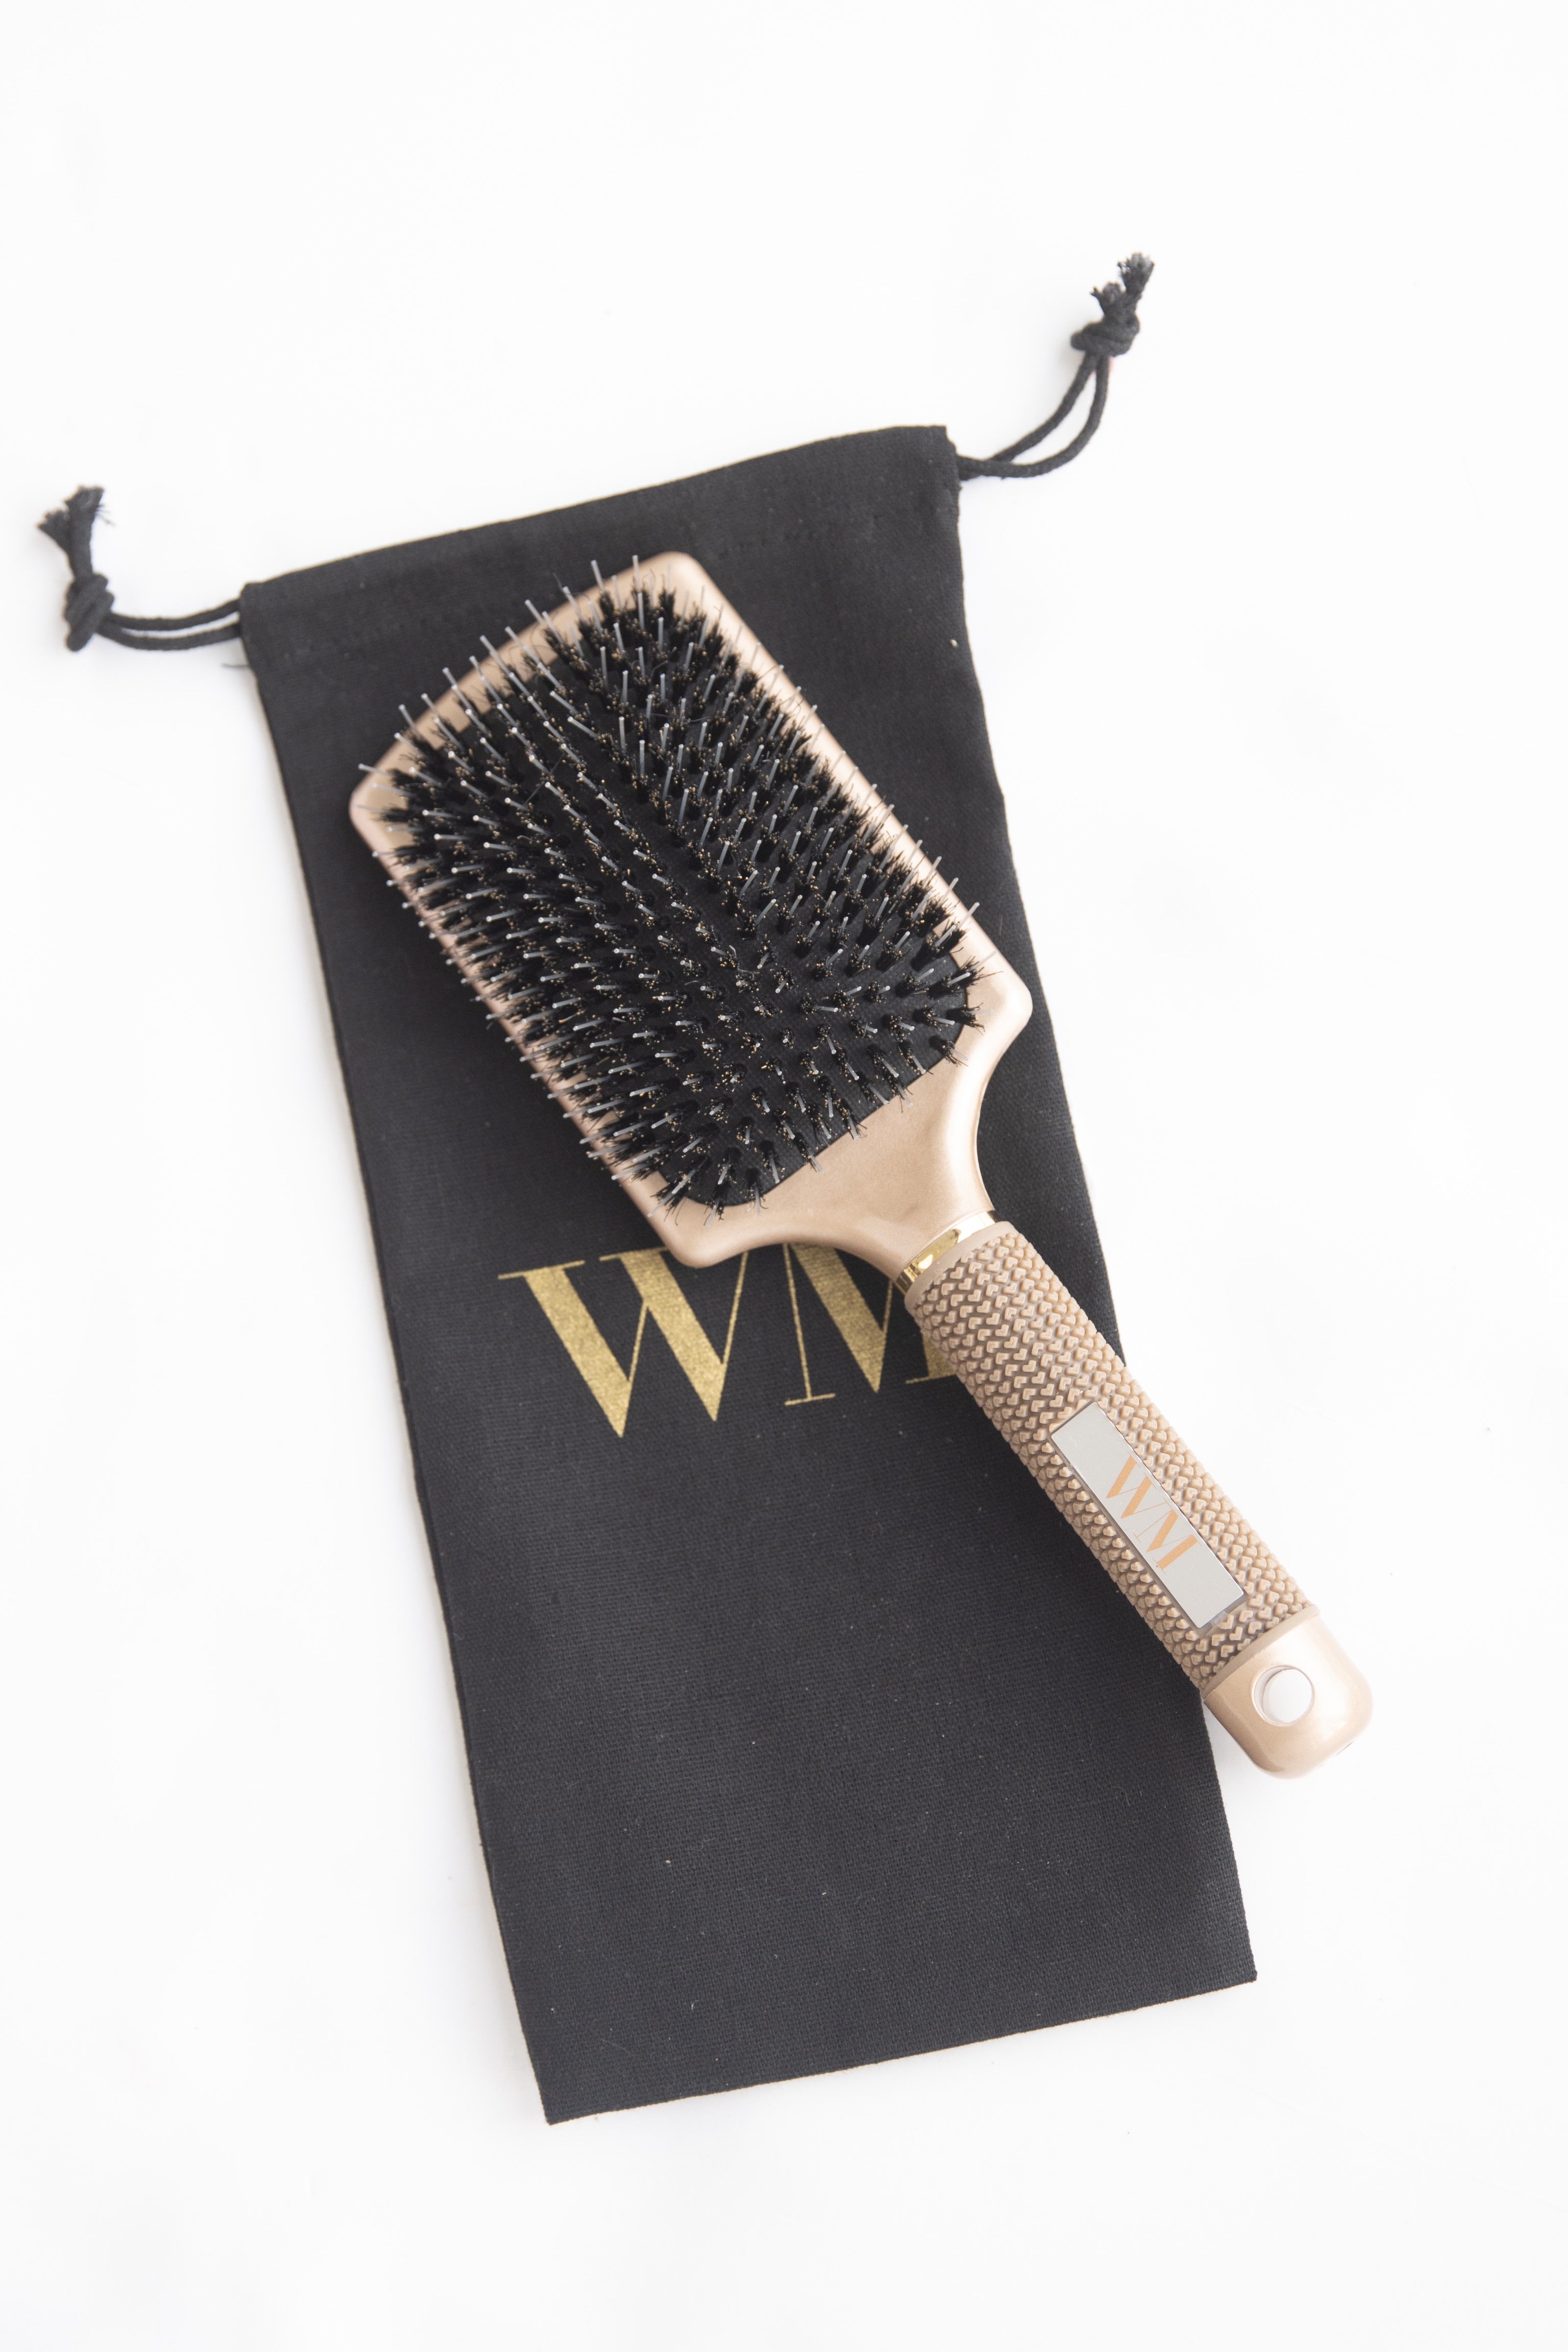 WM Hair Brush